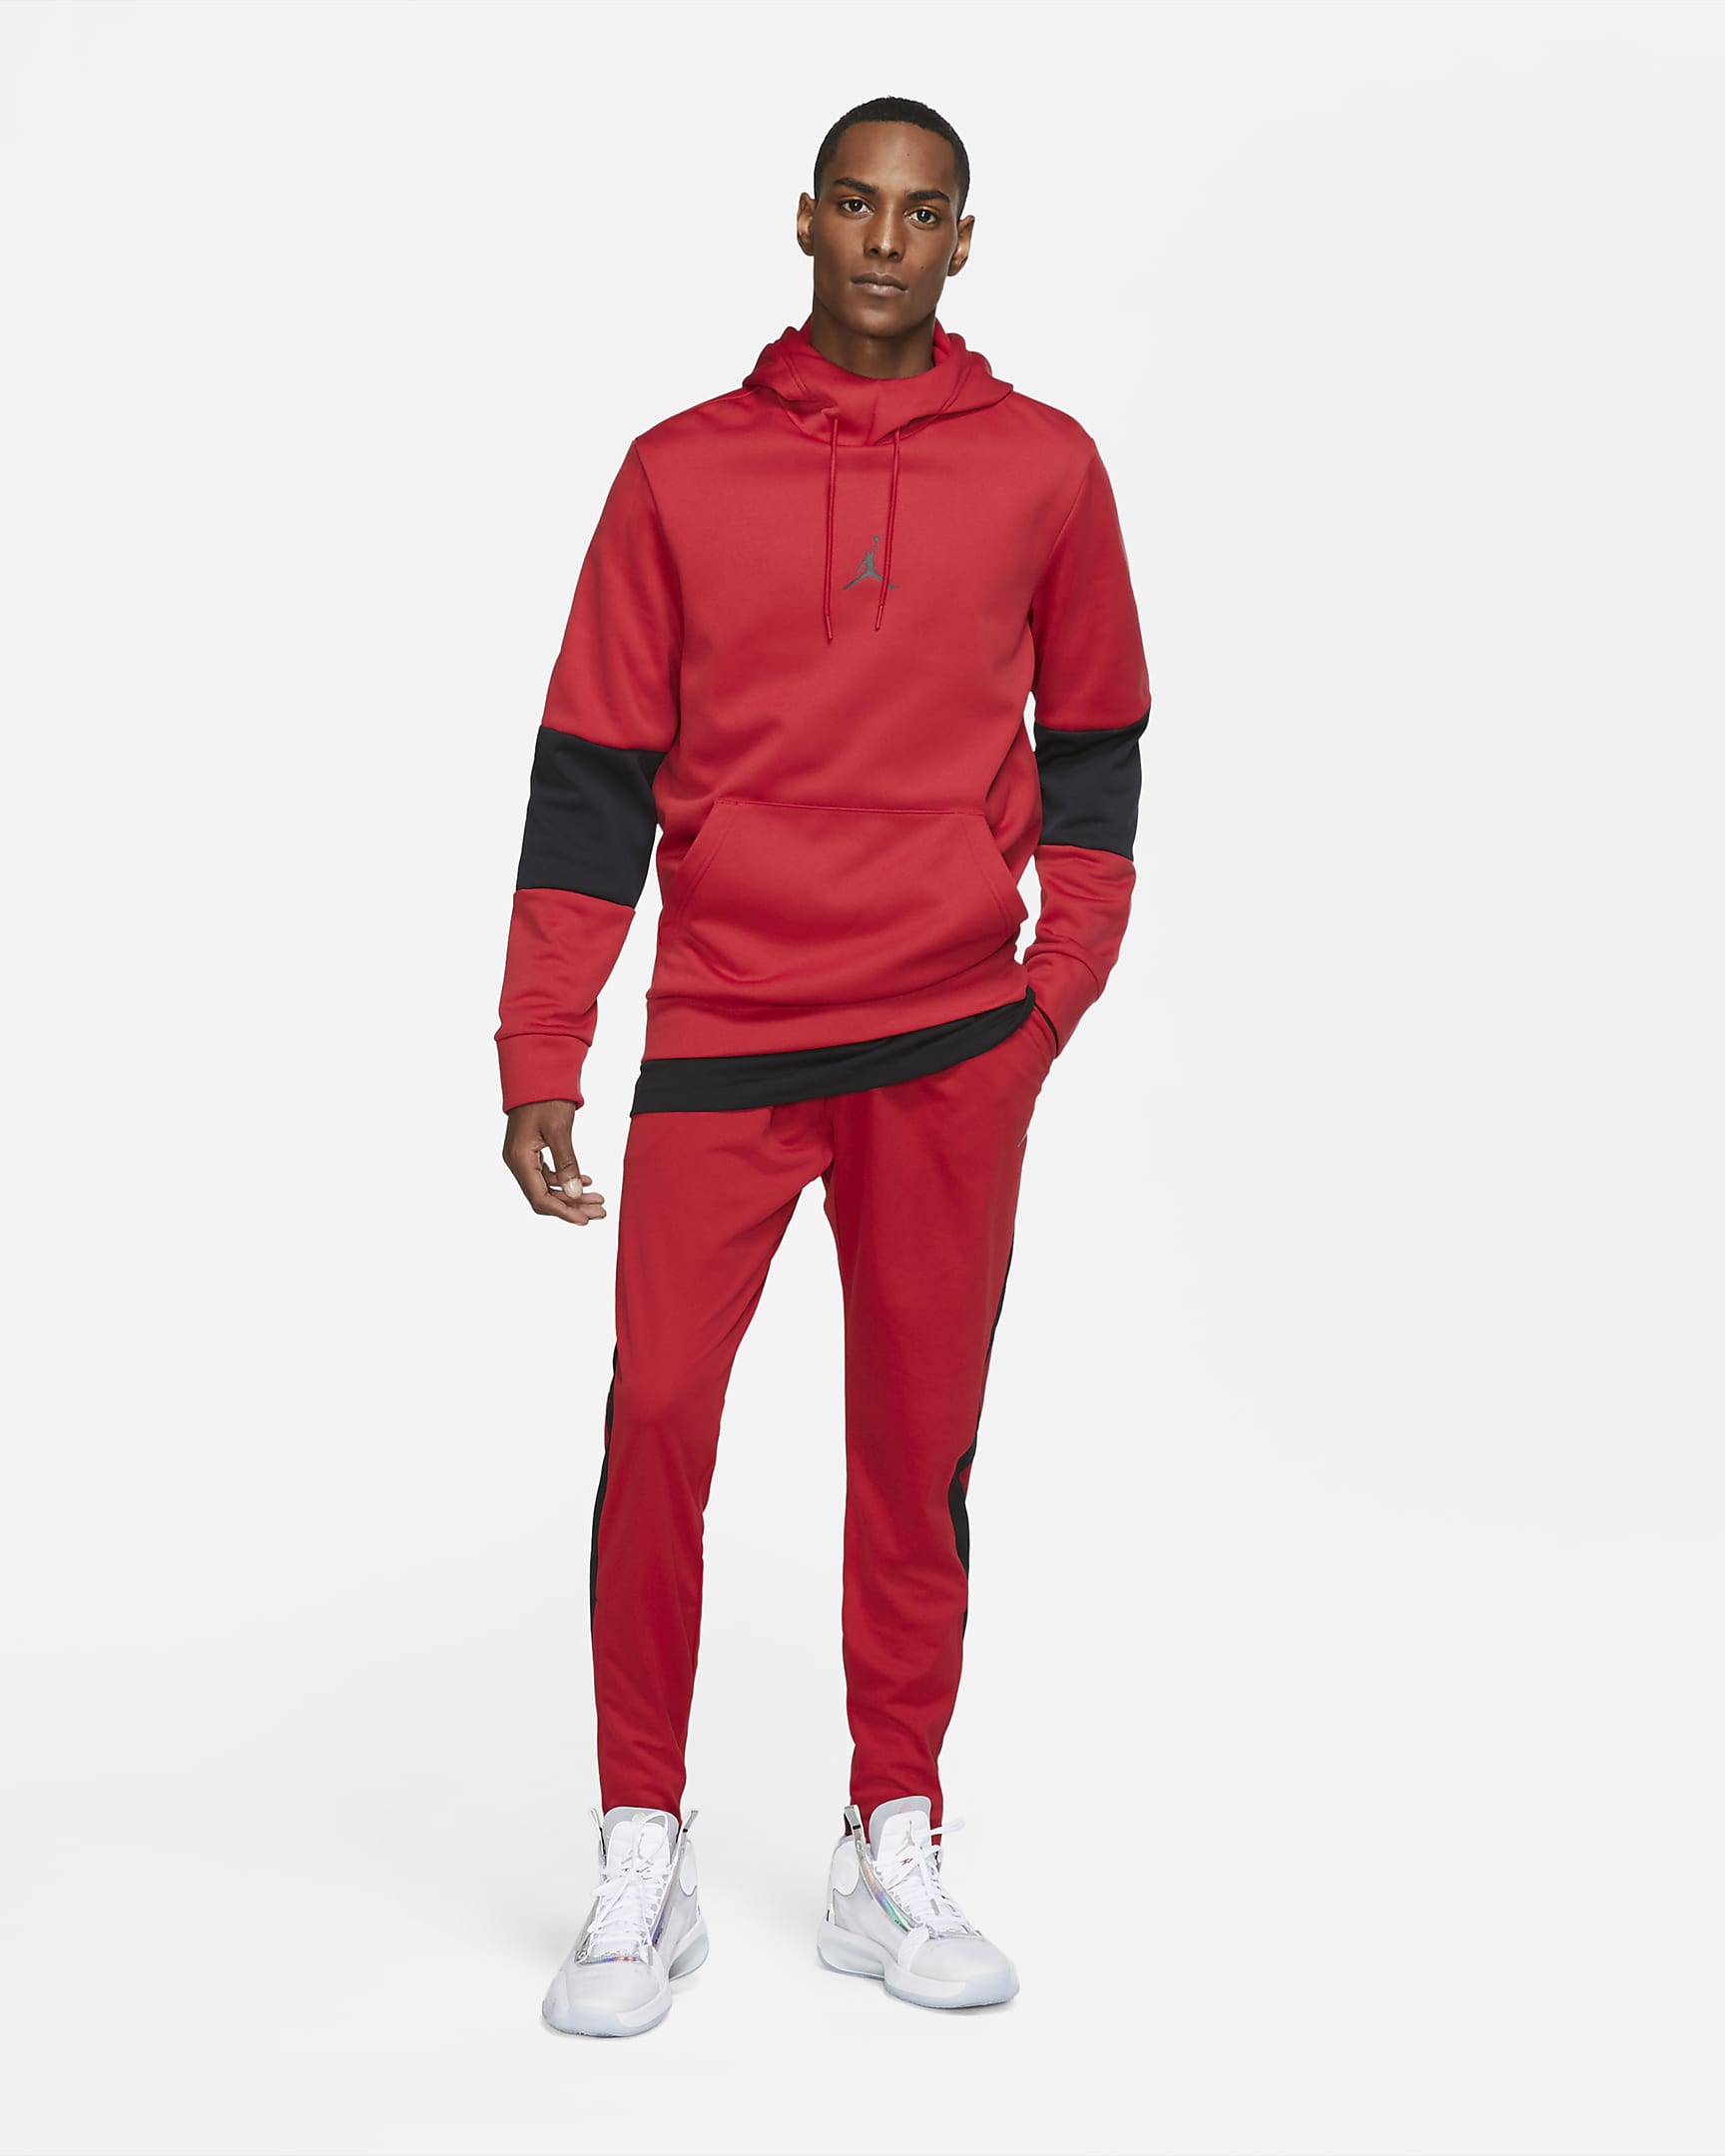 Jordan Dri-FIT Air Men's Knit Trousers. Nike CA